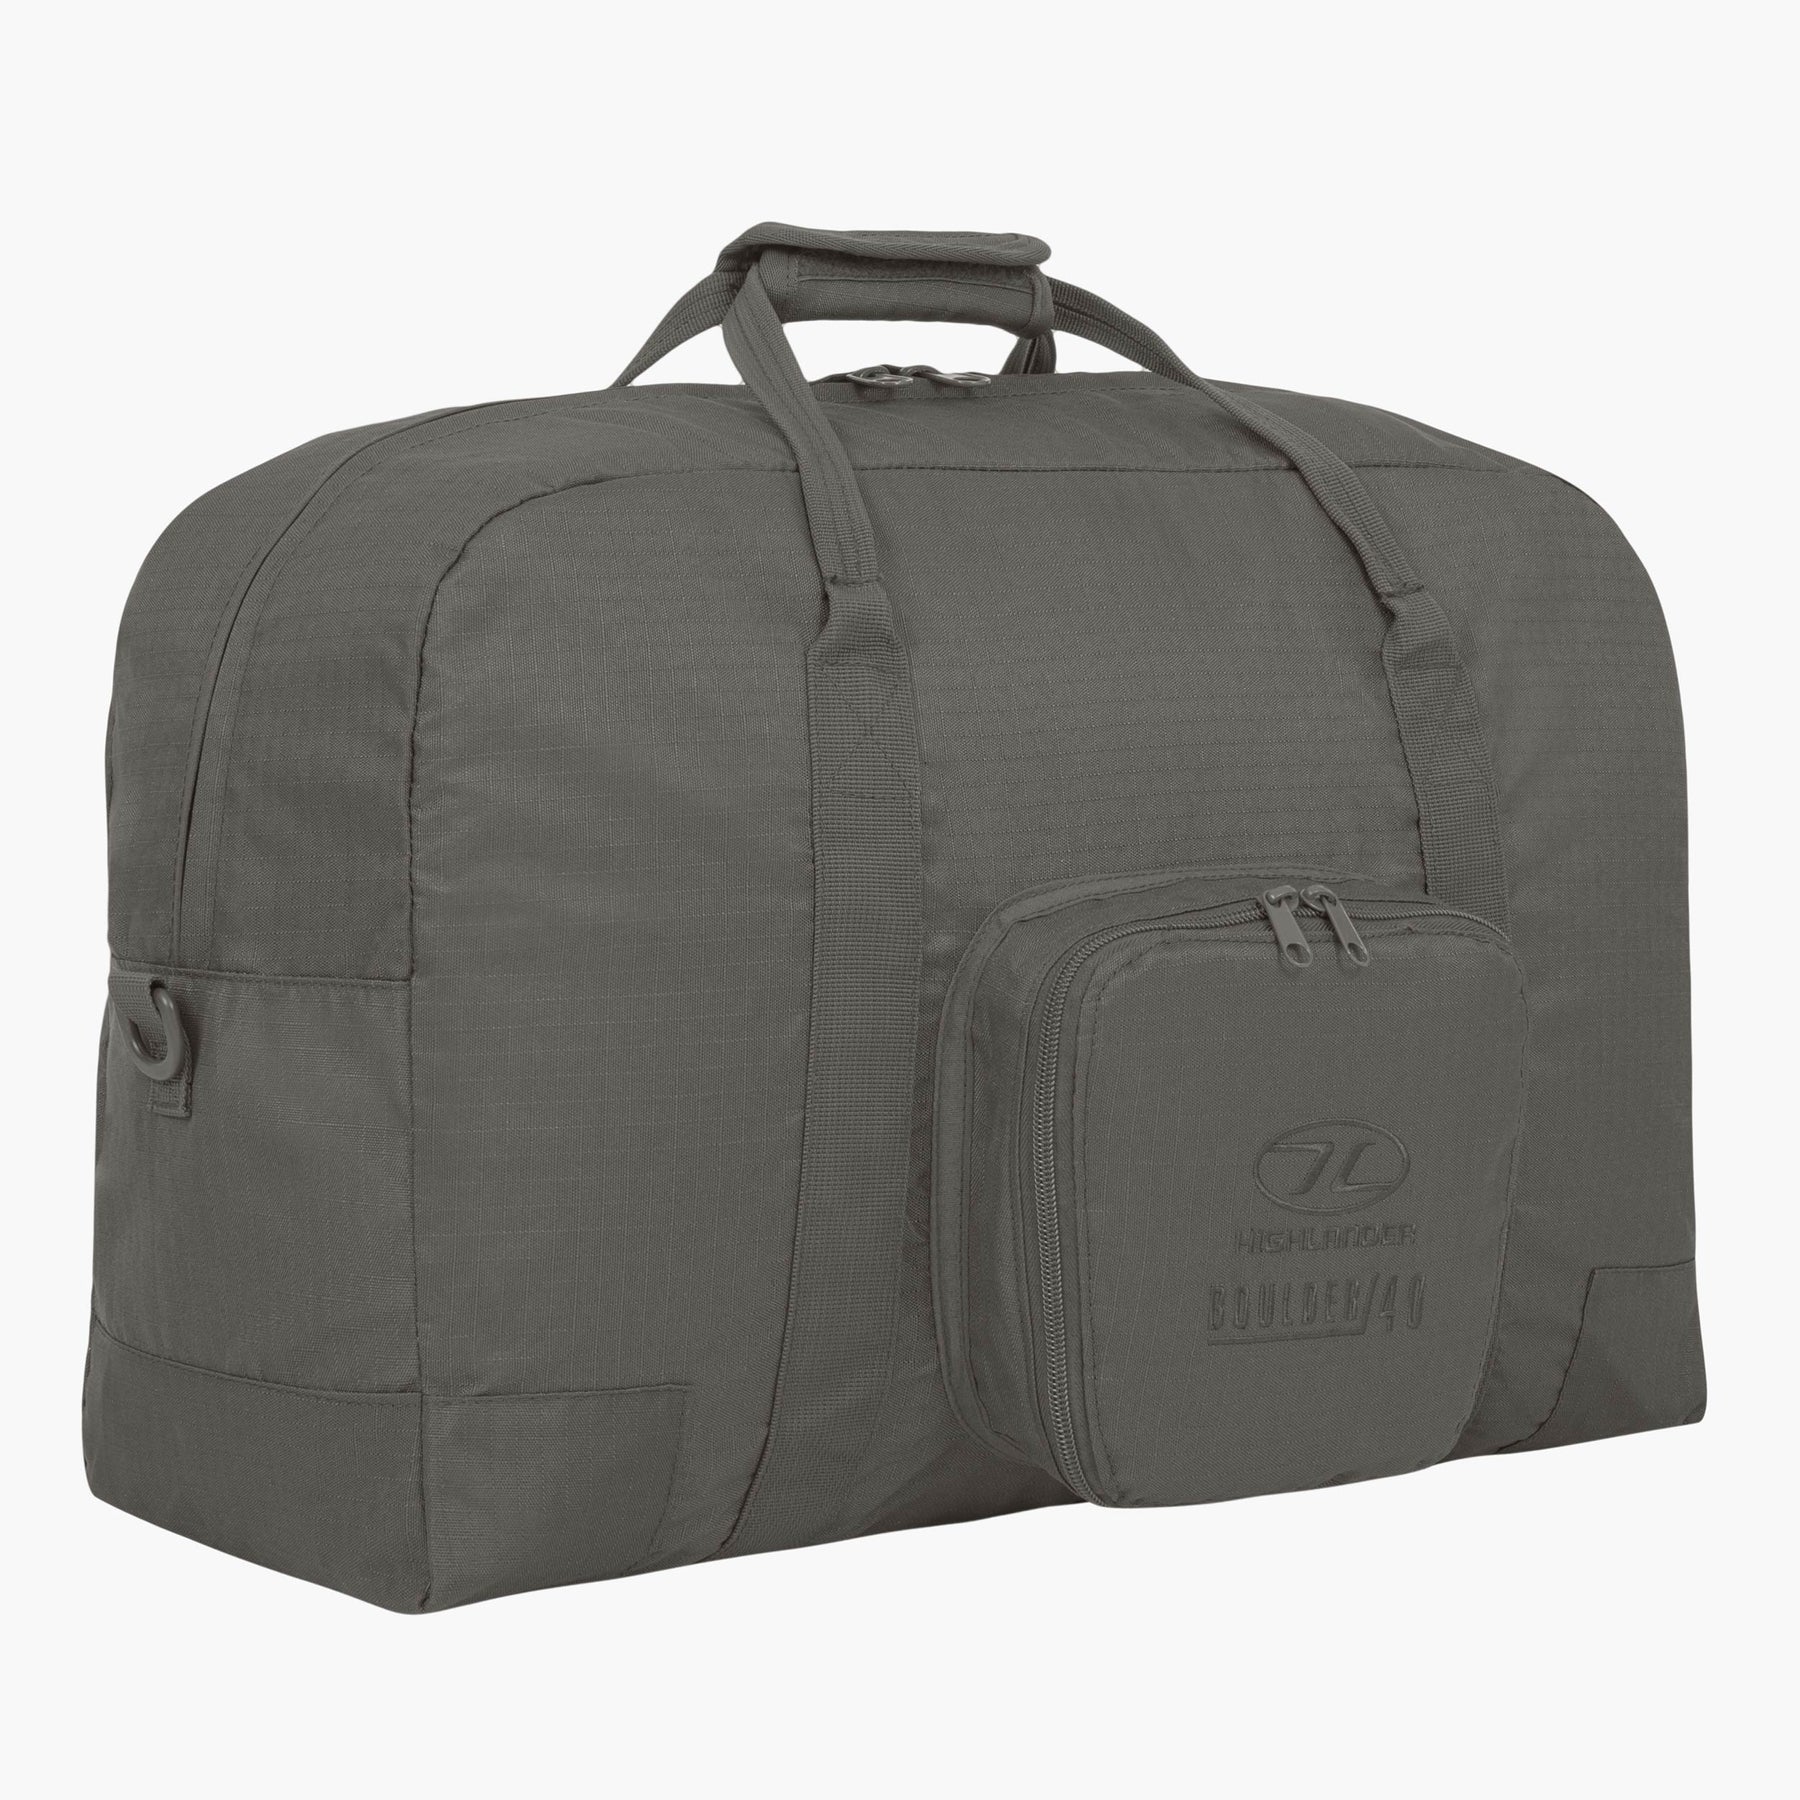 Boulder Duffle Bag 40l- 3 Colour choices